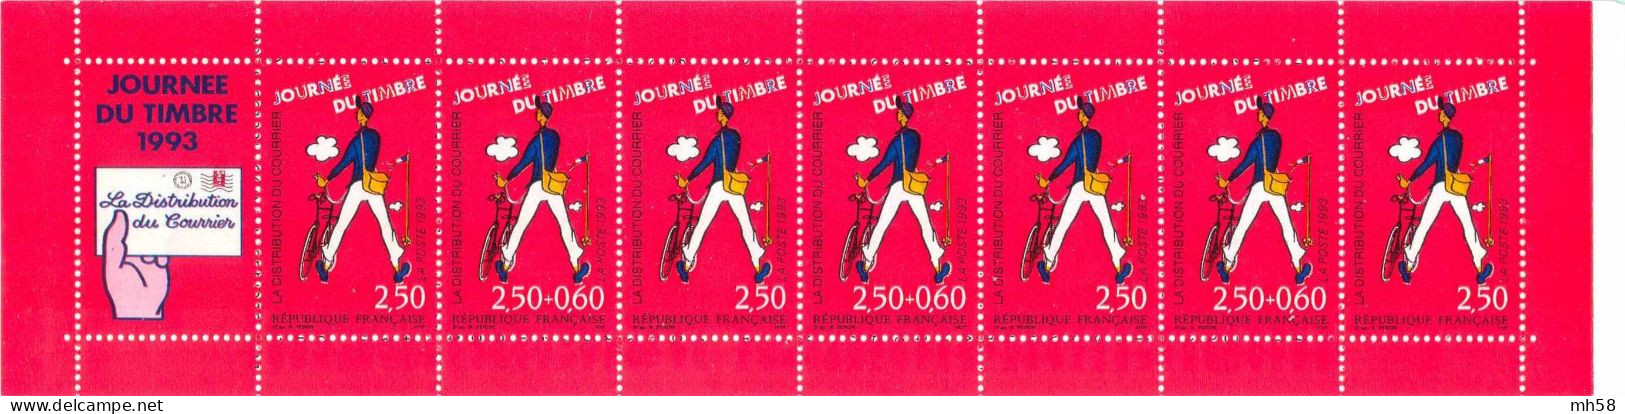 FRANCE 1993 - Journée Du Timbre Distribution Du Courrier - Bande Carnet N° BC 2794 Non Pliée Neuf ** - Stamp Day